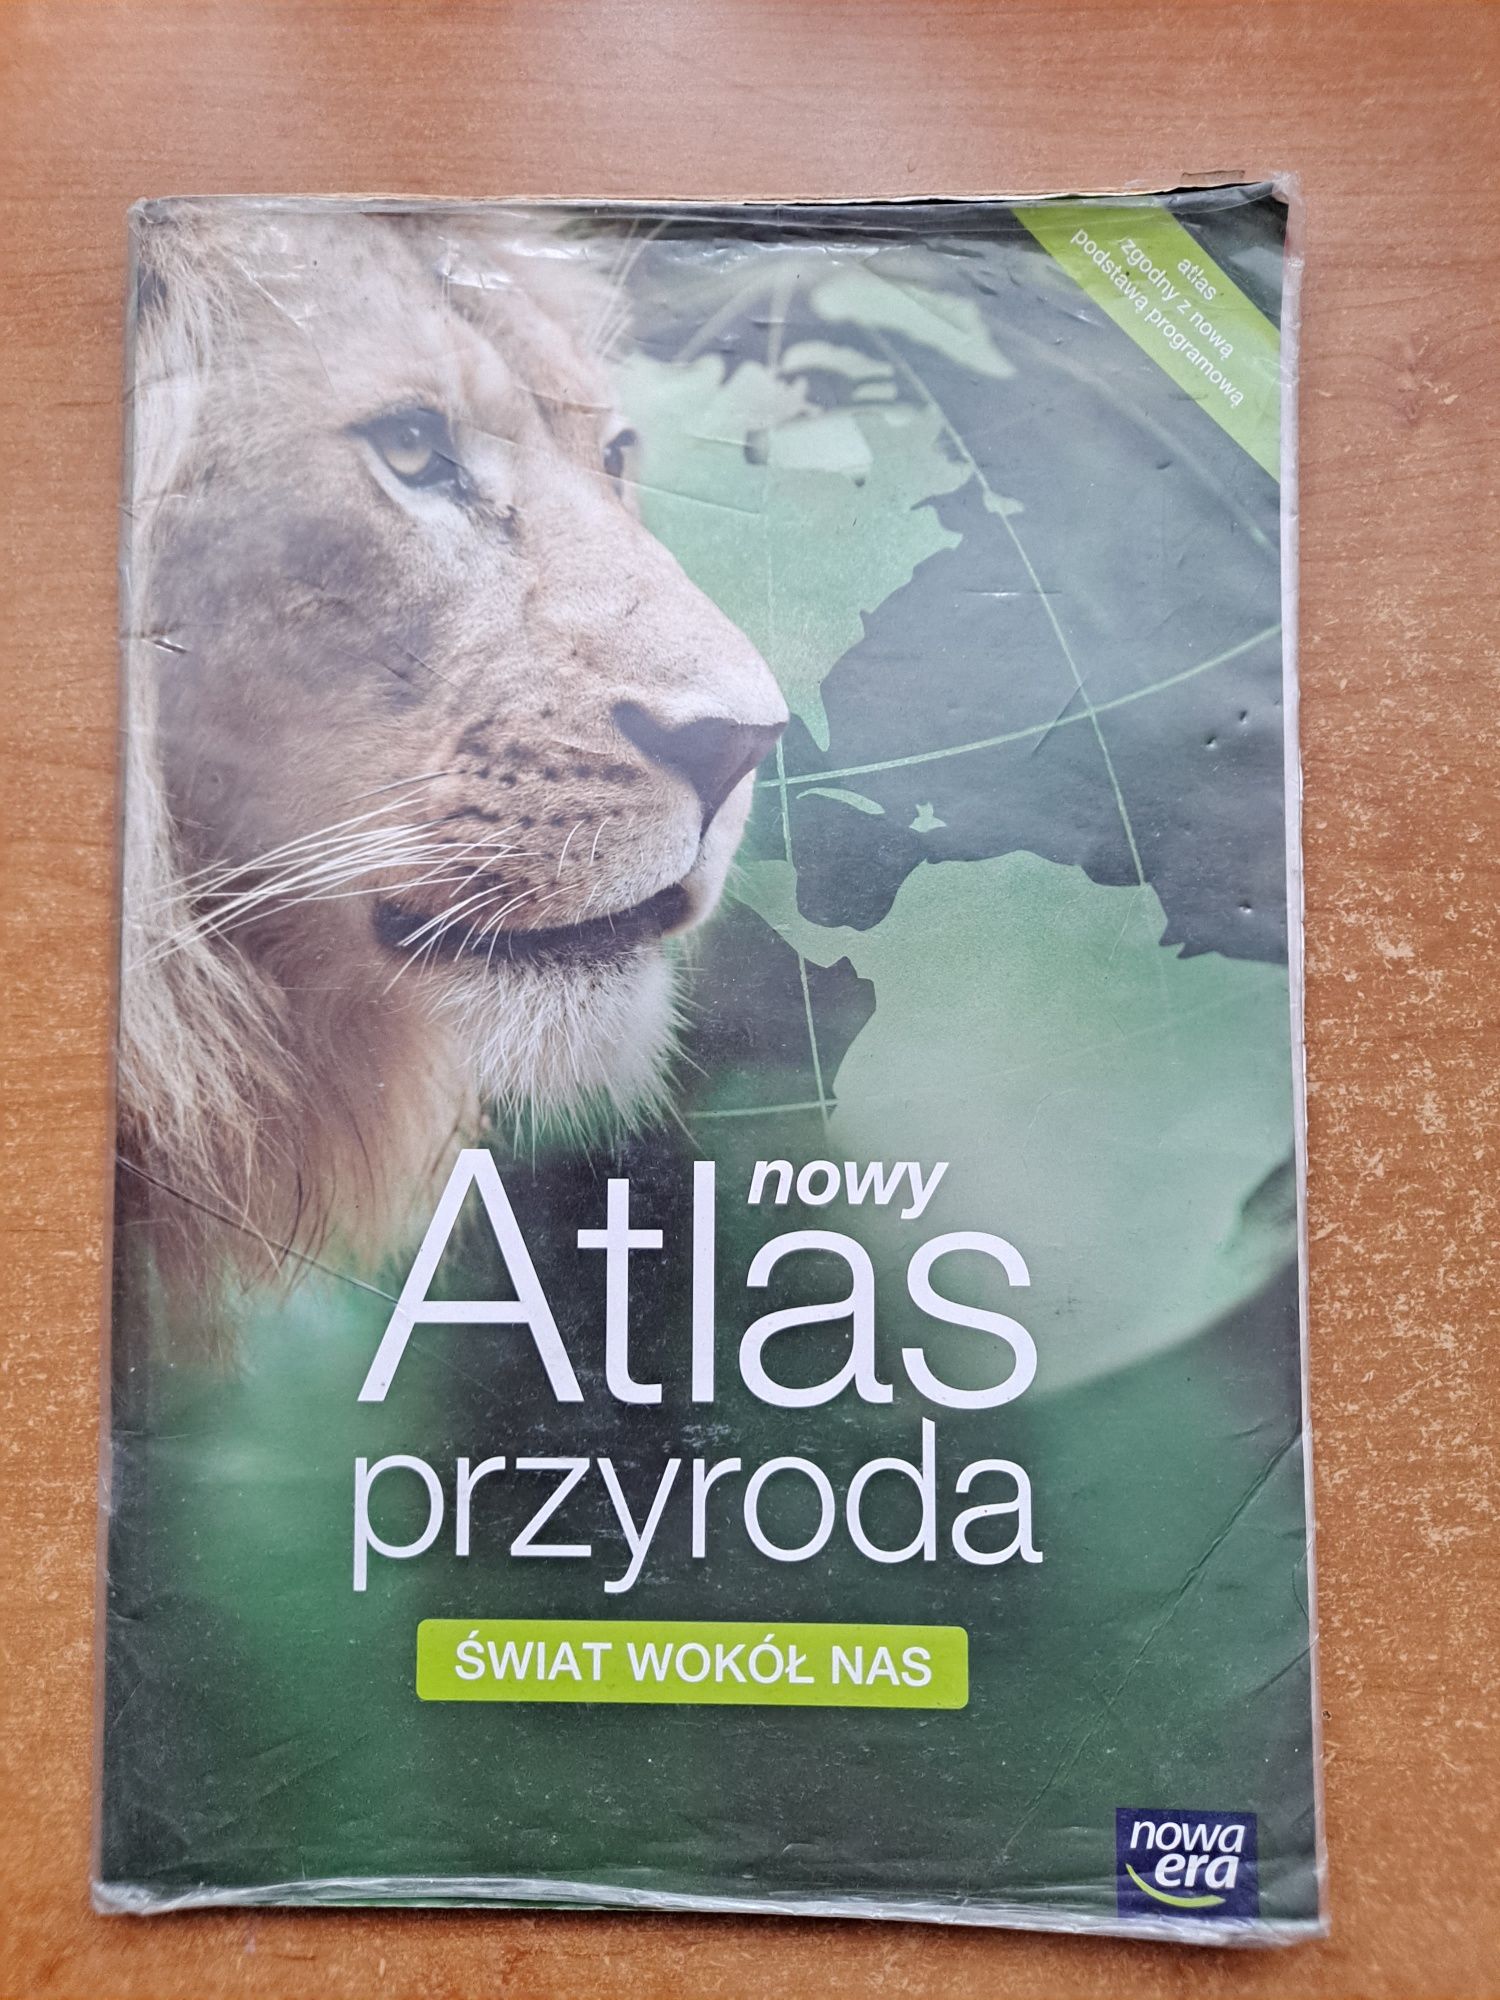 Atlas przyroda - świat wokół nas